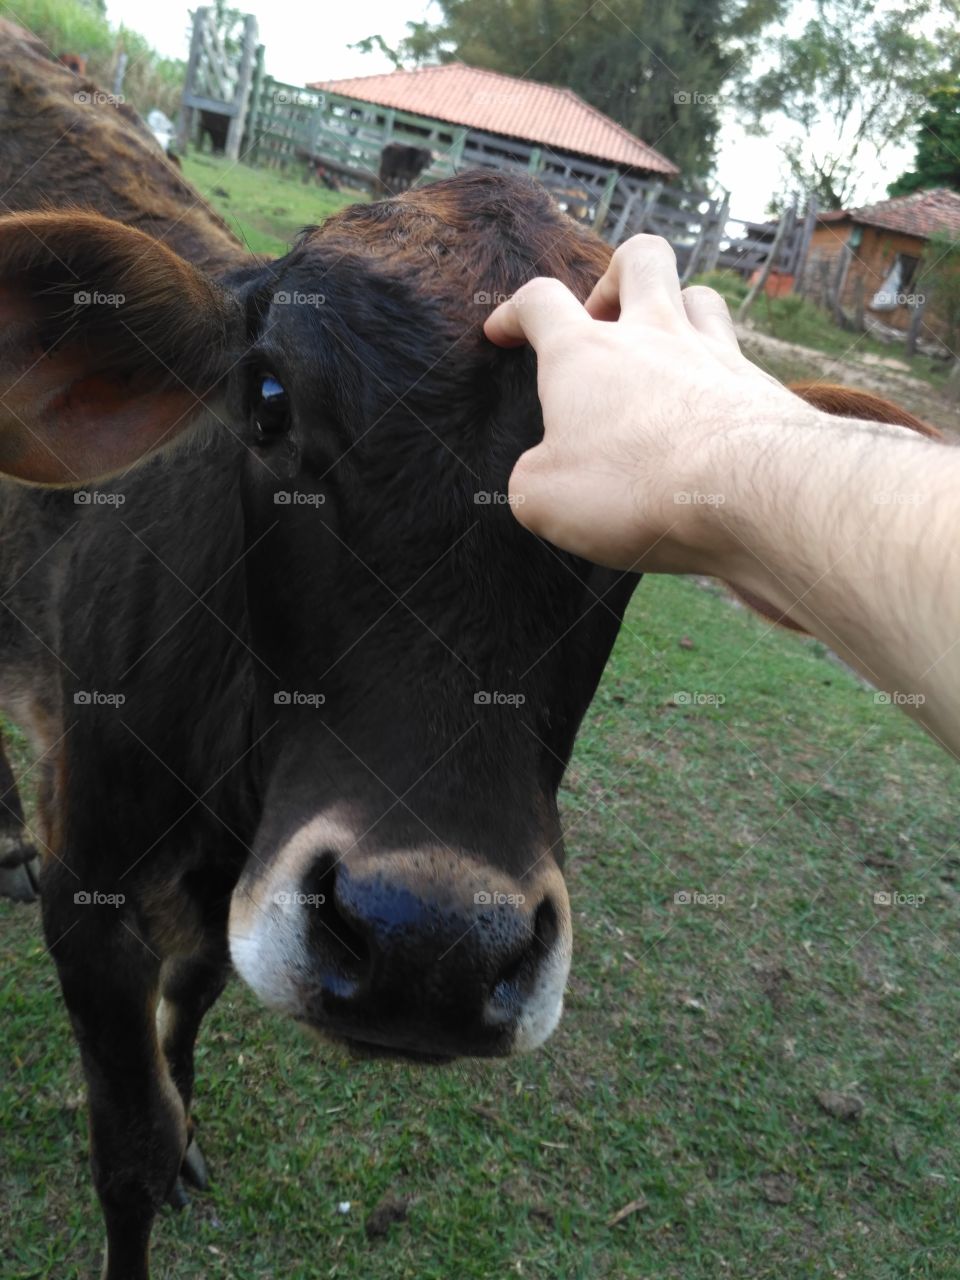 a friend cow